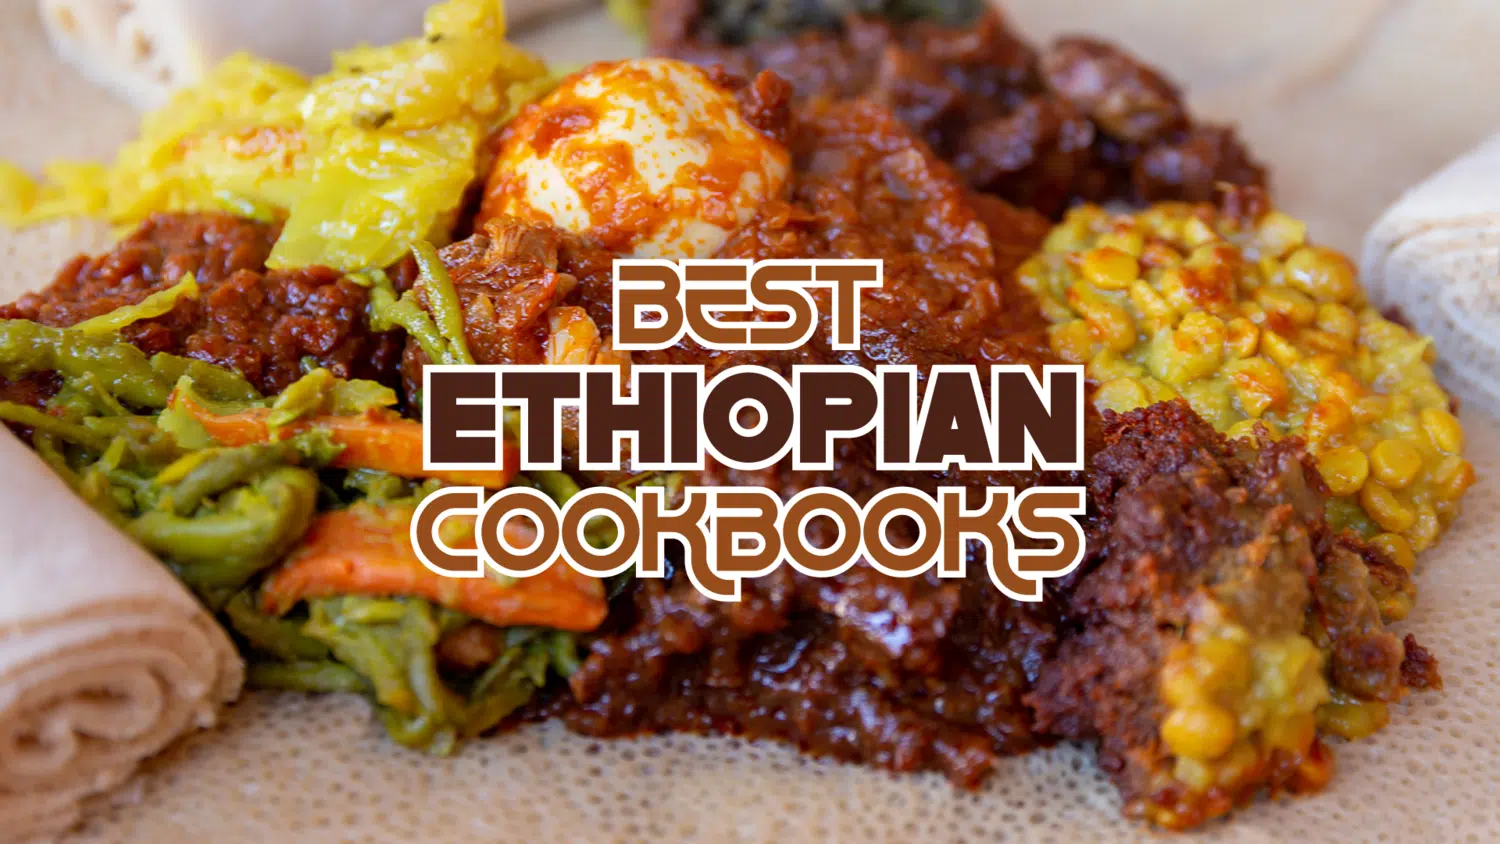 Best Ethiopian Cookbooks